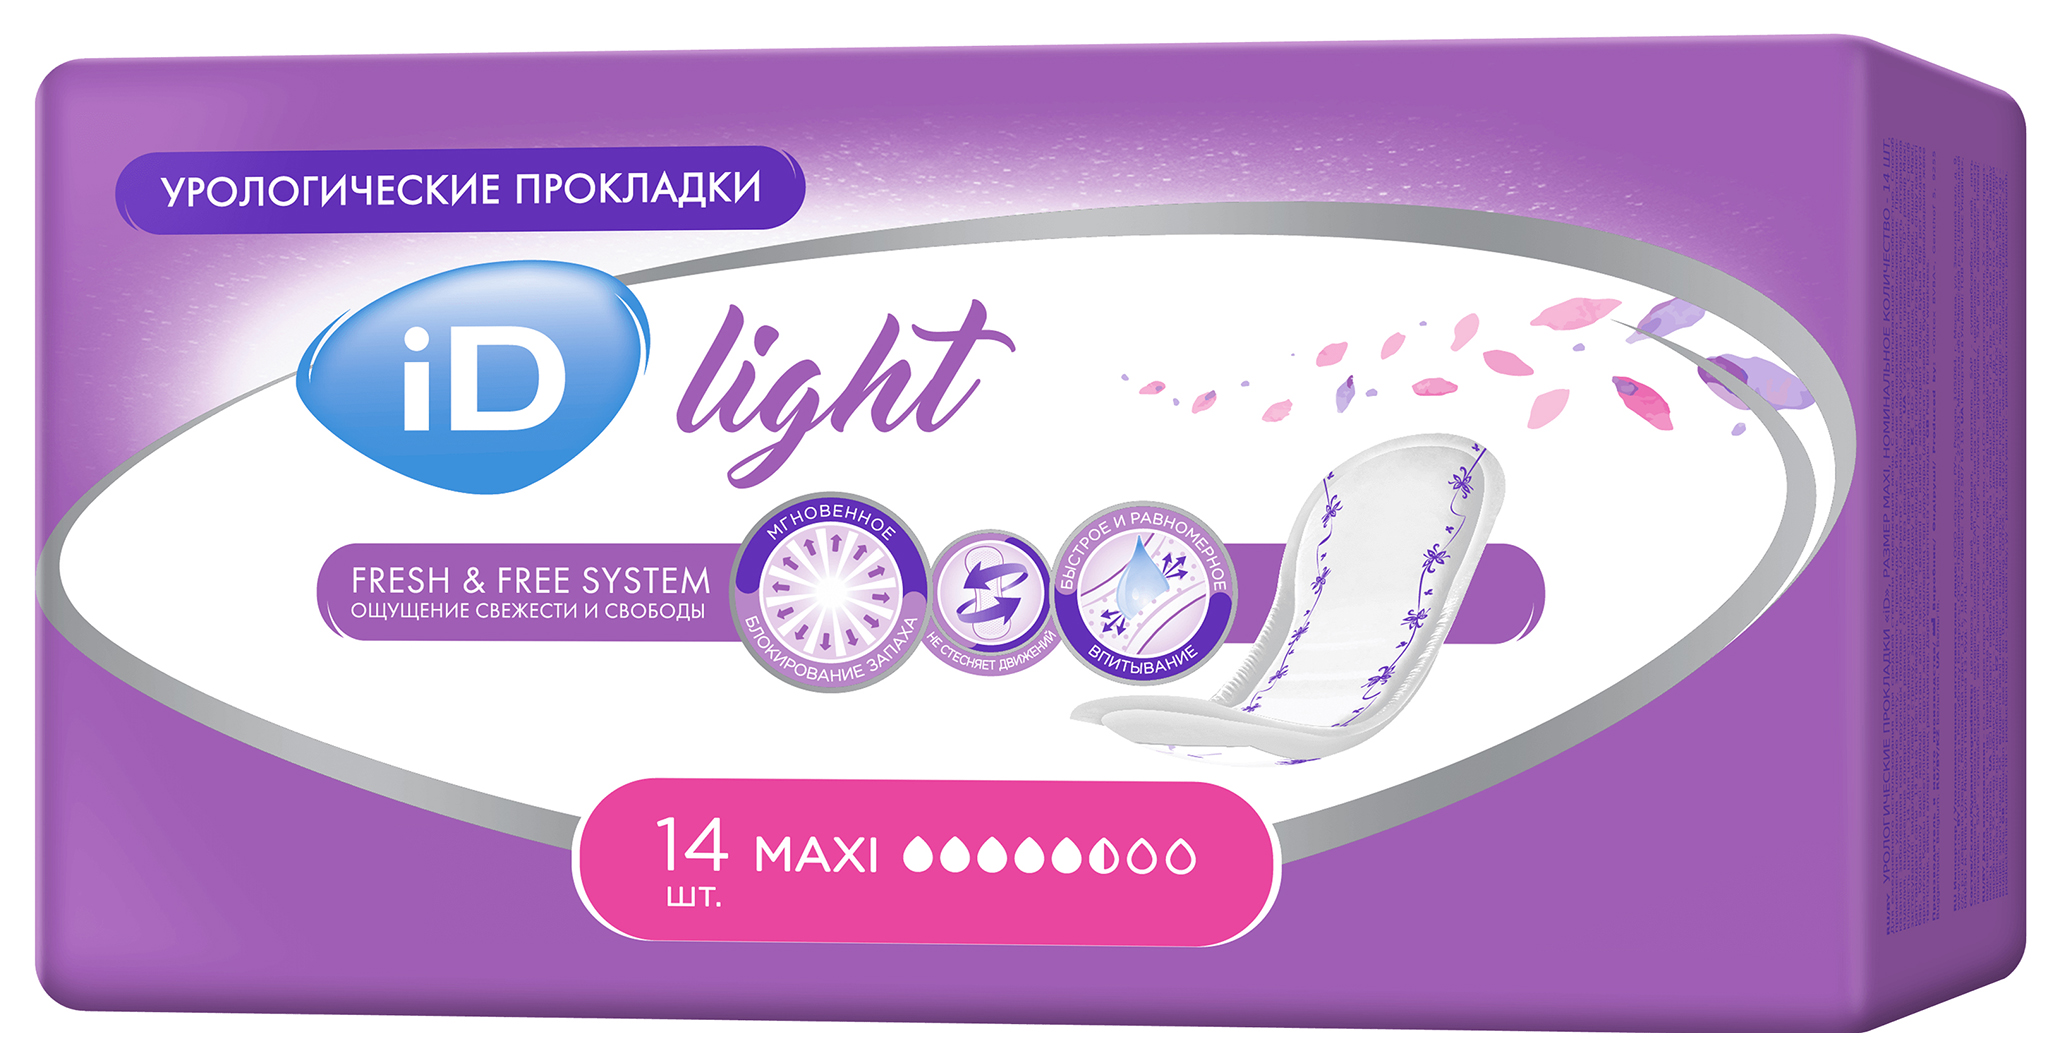 Урологические прокладки для женщин, 14шт. iD Light Maxi